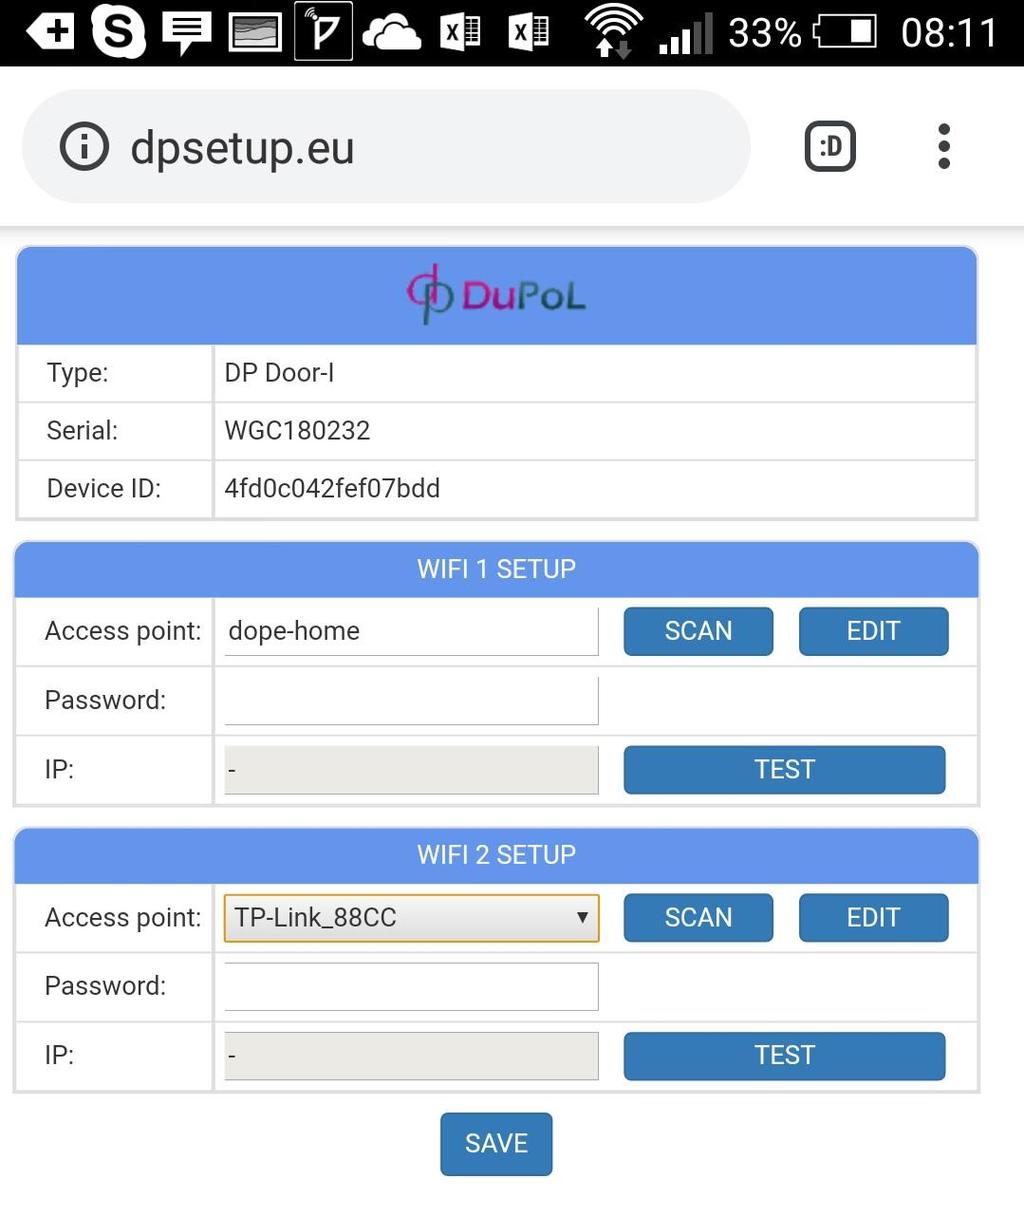 Kapcsolódjon a DP DEVICE elnevezésű hálózatra egy WIFI képes telefonnal vagy számítógéppel majd egy WEB böngésző segítségével nyissa meg a beállítást tartalmazó dpsetup.eu weboldalt.